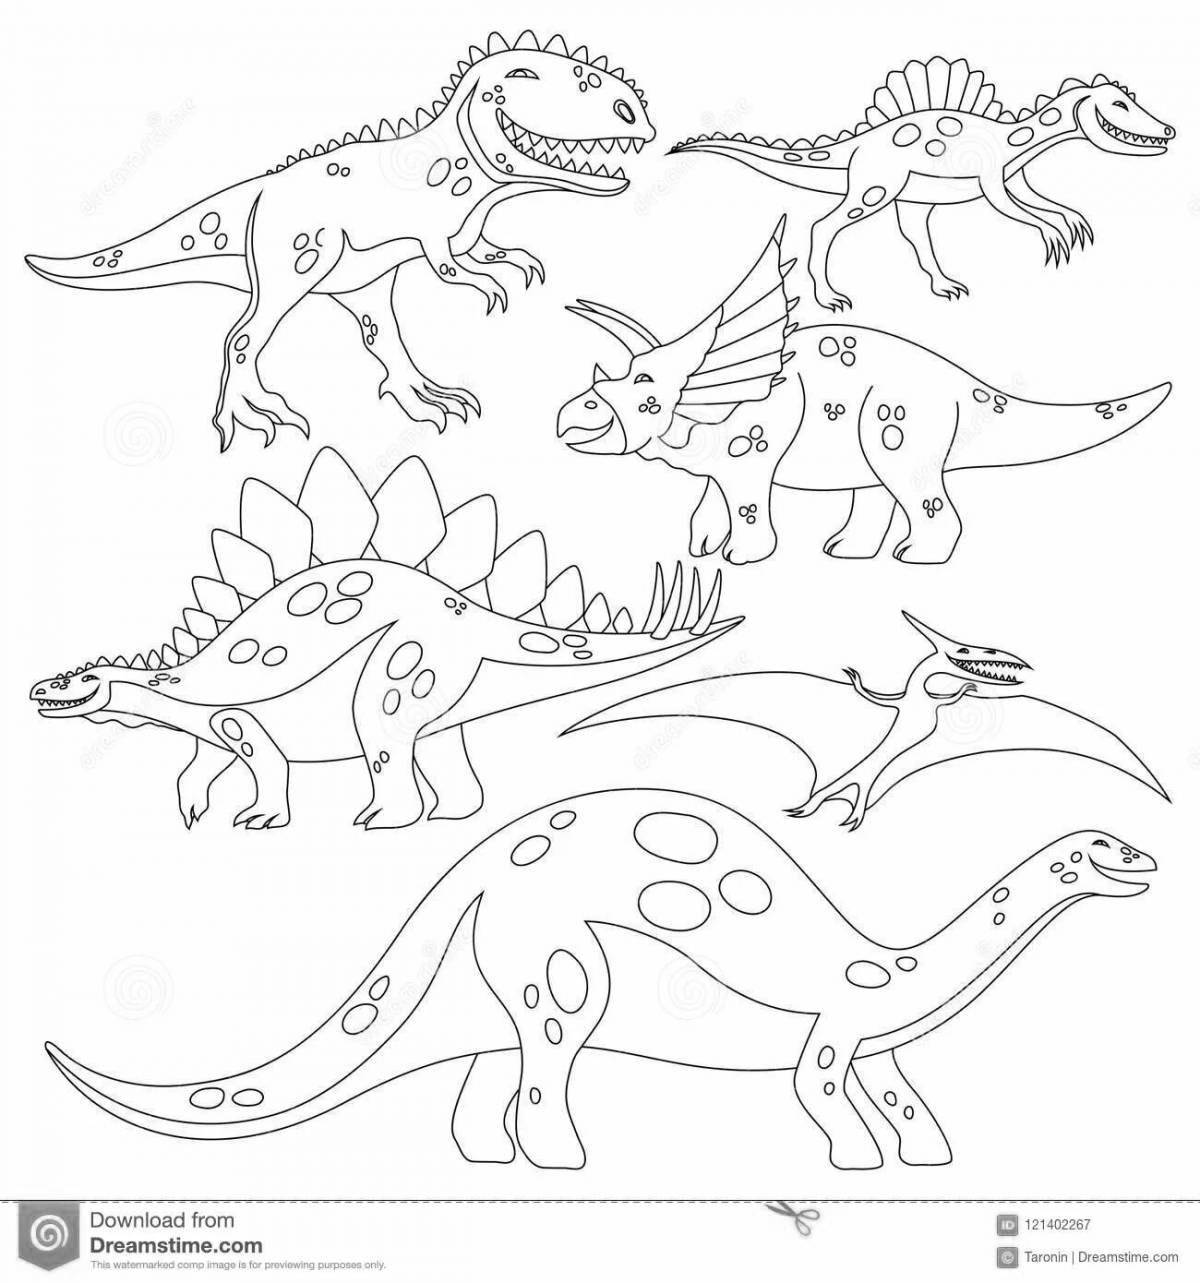 Креативная раскраска динозавры все